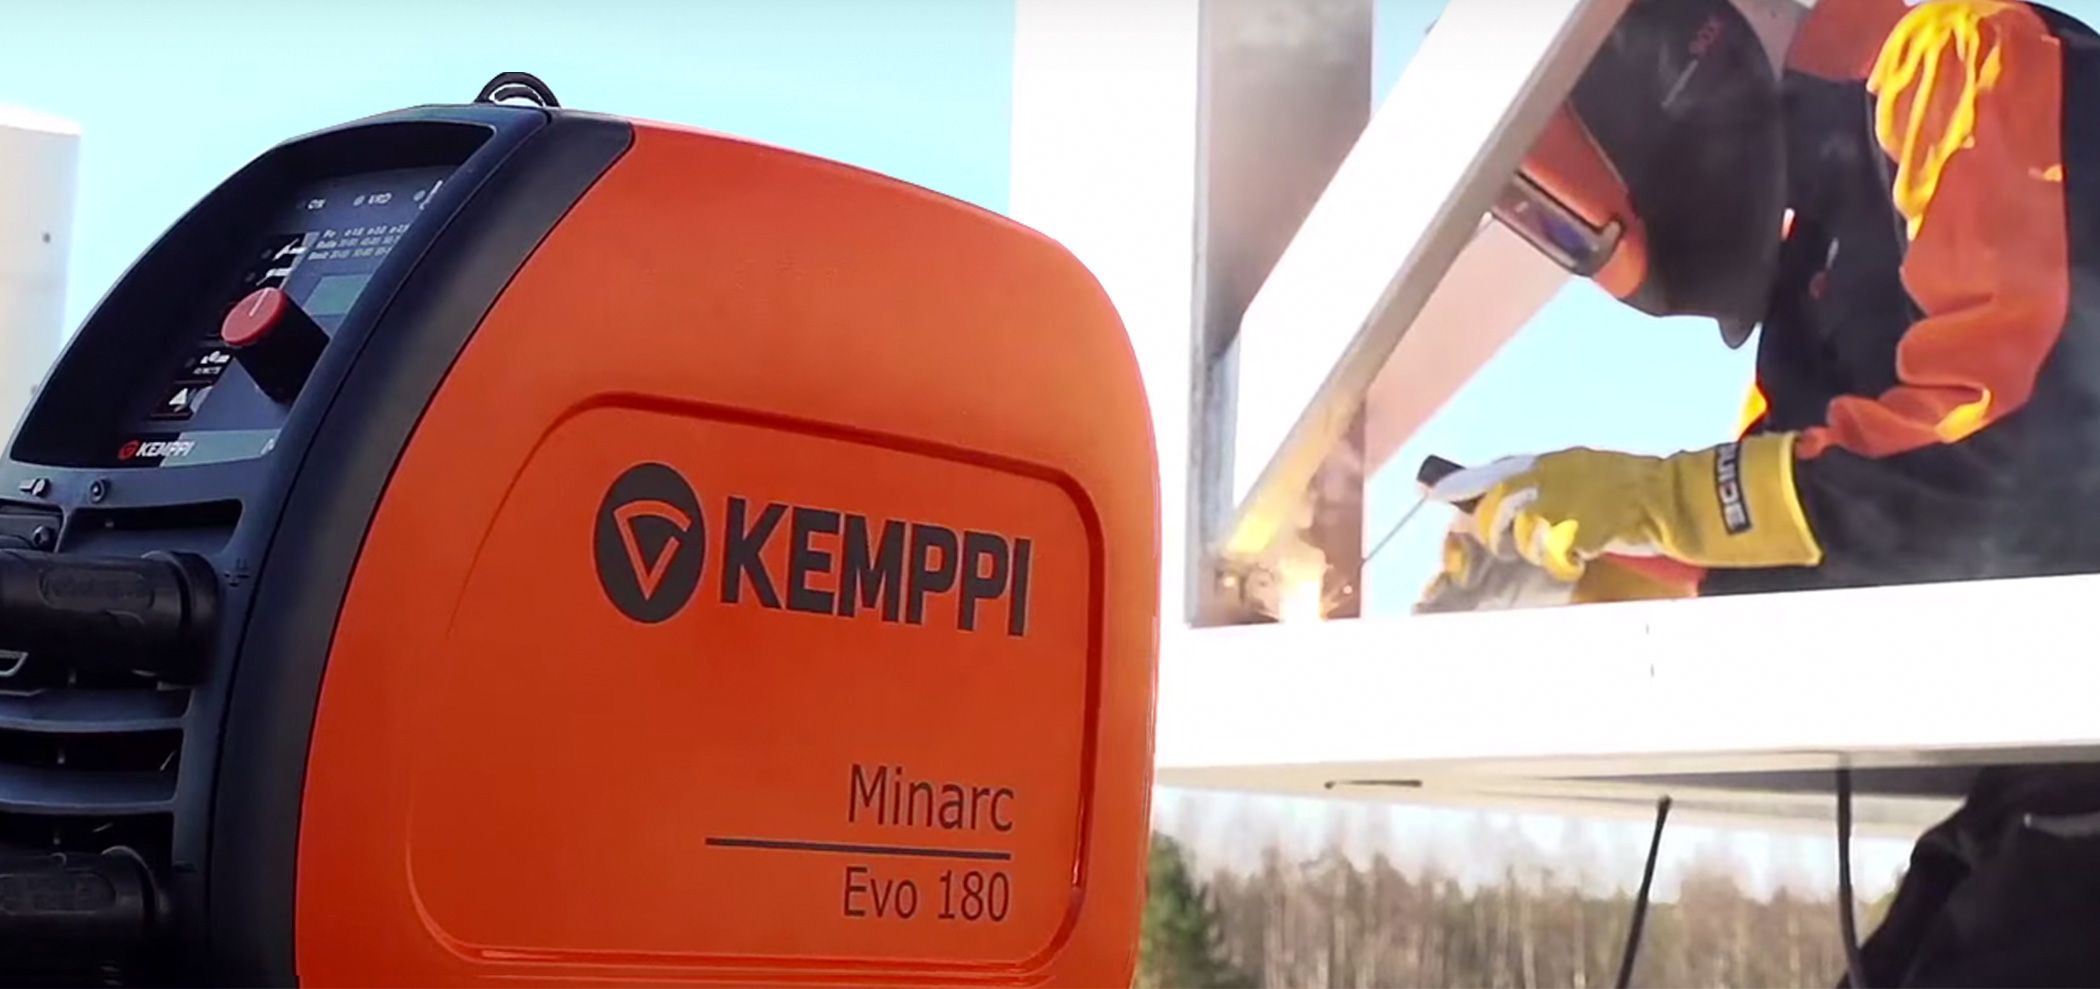 Spawarka Kemppi Minarc EVO 180 to doskonały łuk, wysoka wydajność oraz mobilność